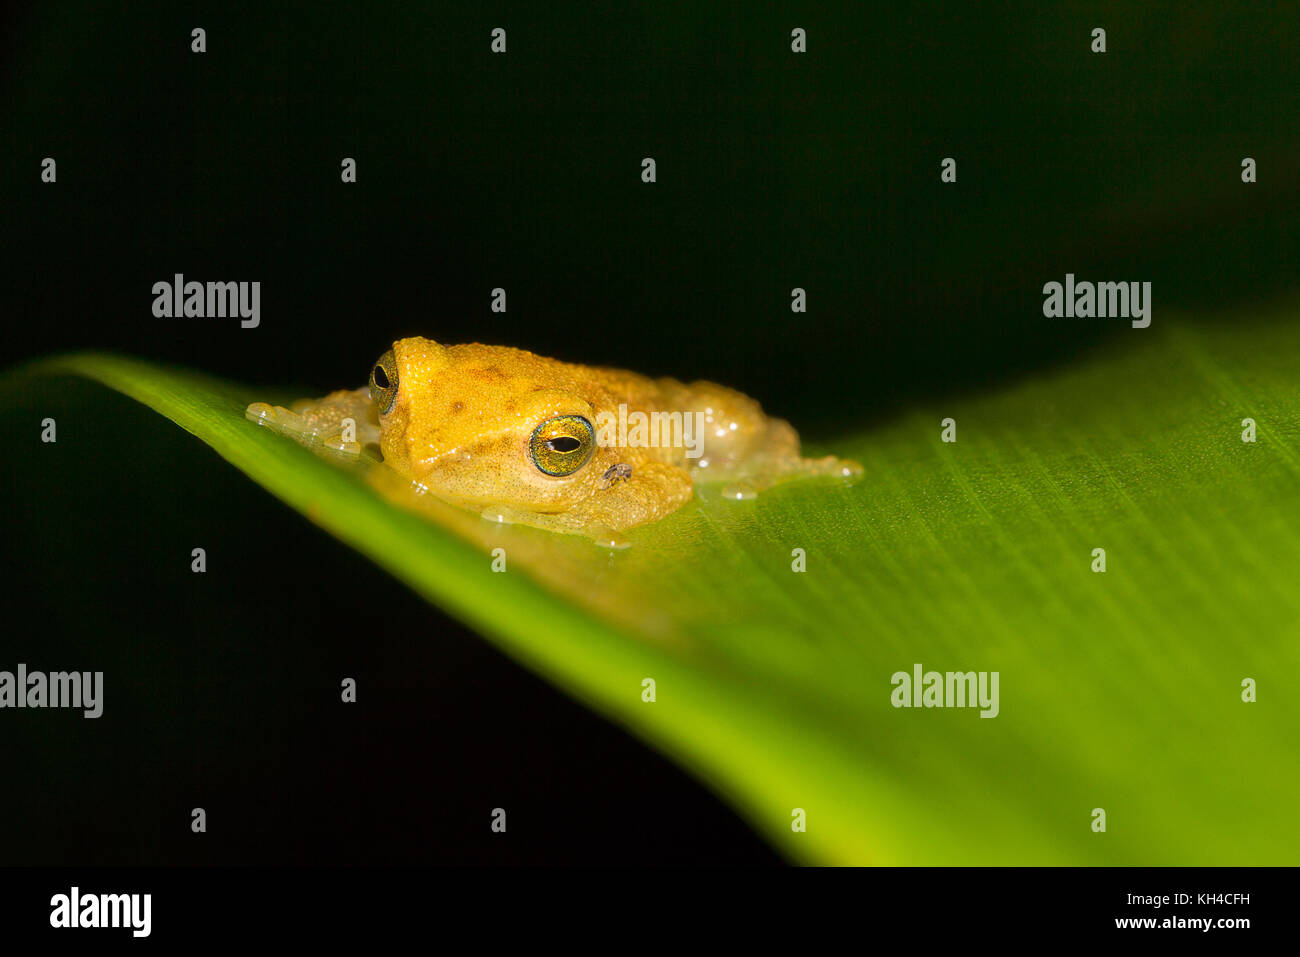 Blue eyed bush frog, Philautus neelanethrus, Raorchestes luteolus Agumbe, Karnataka, India Stock Photo